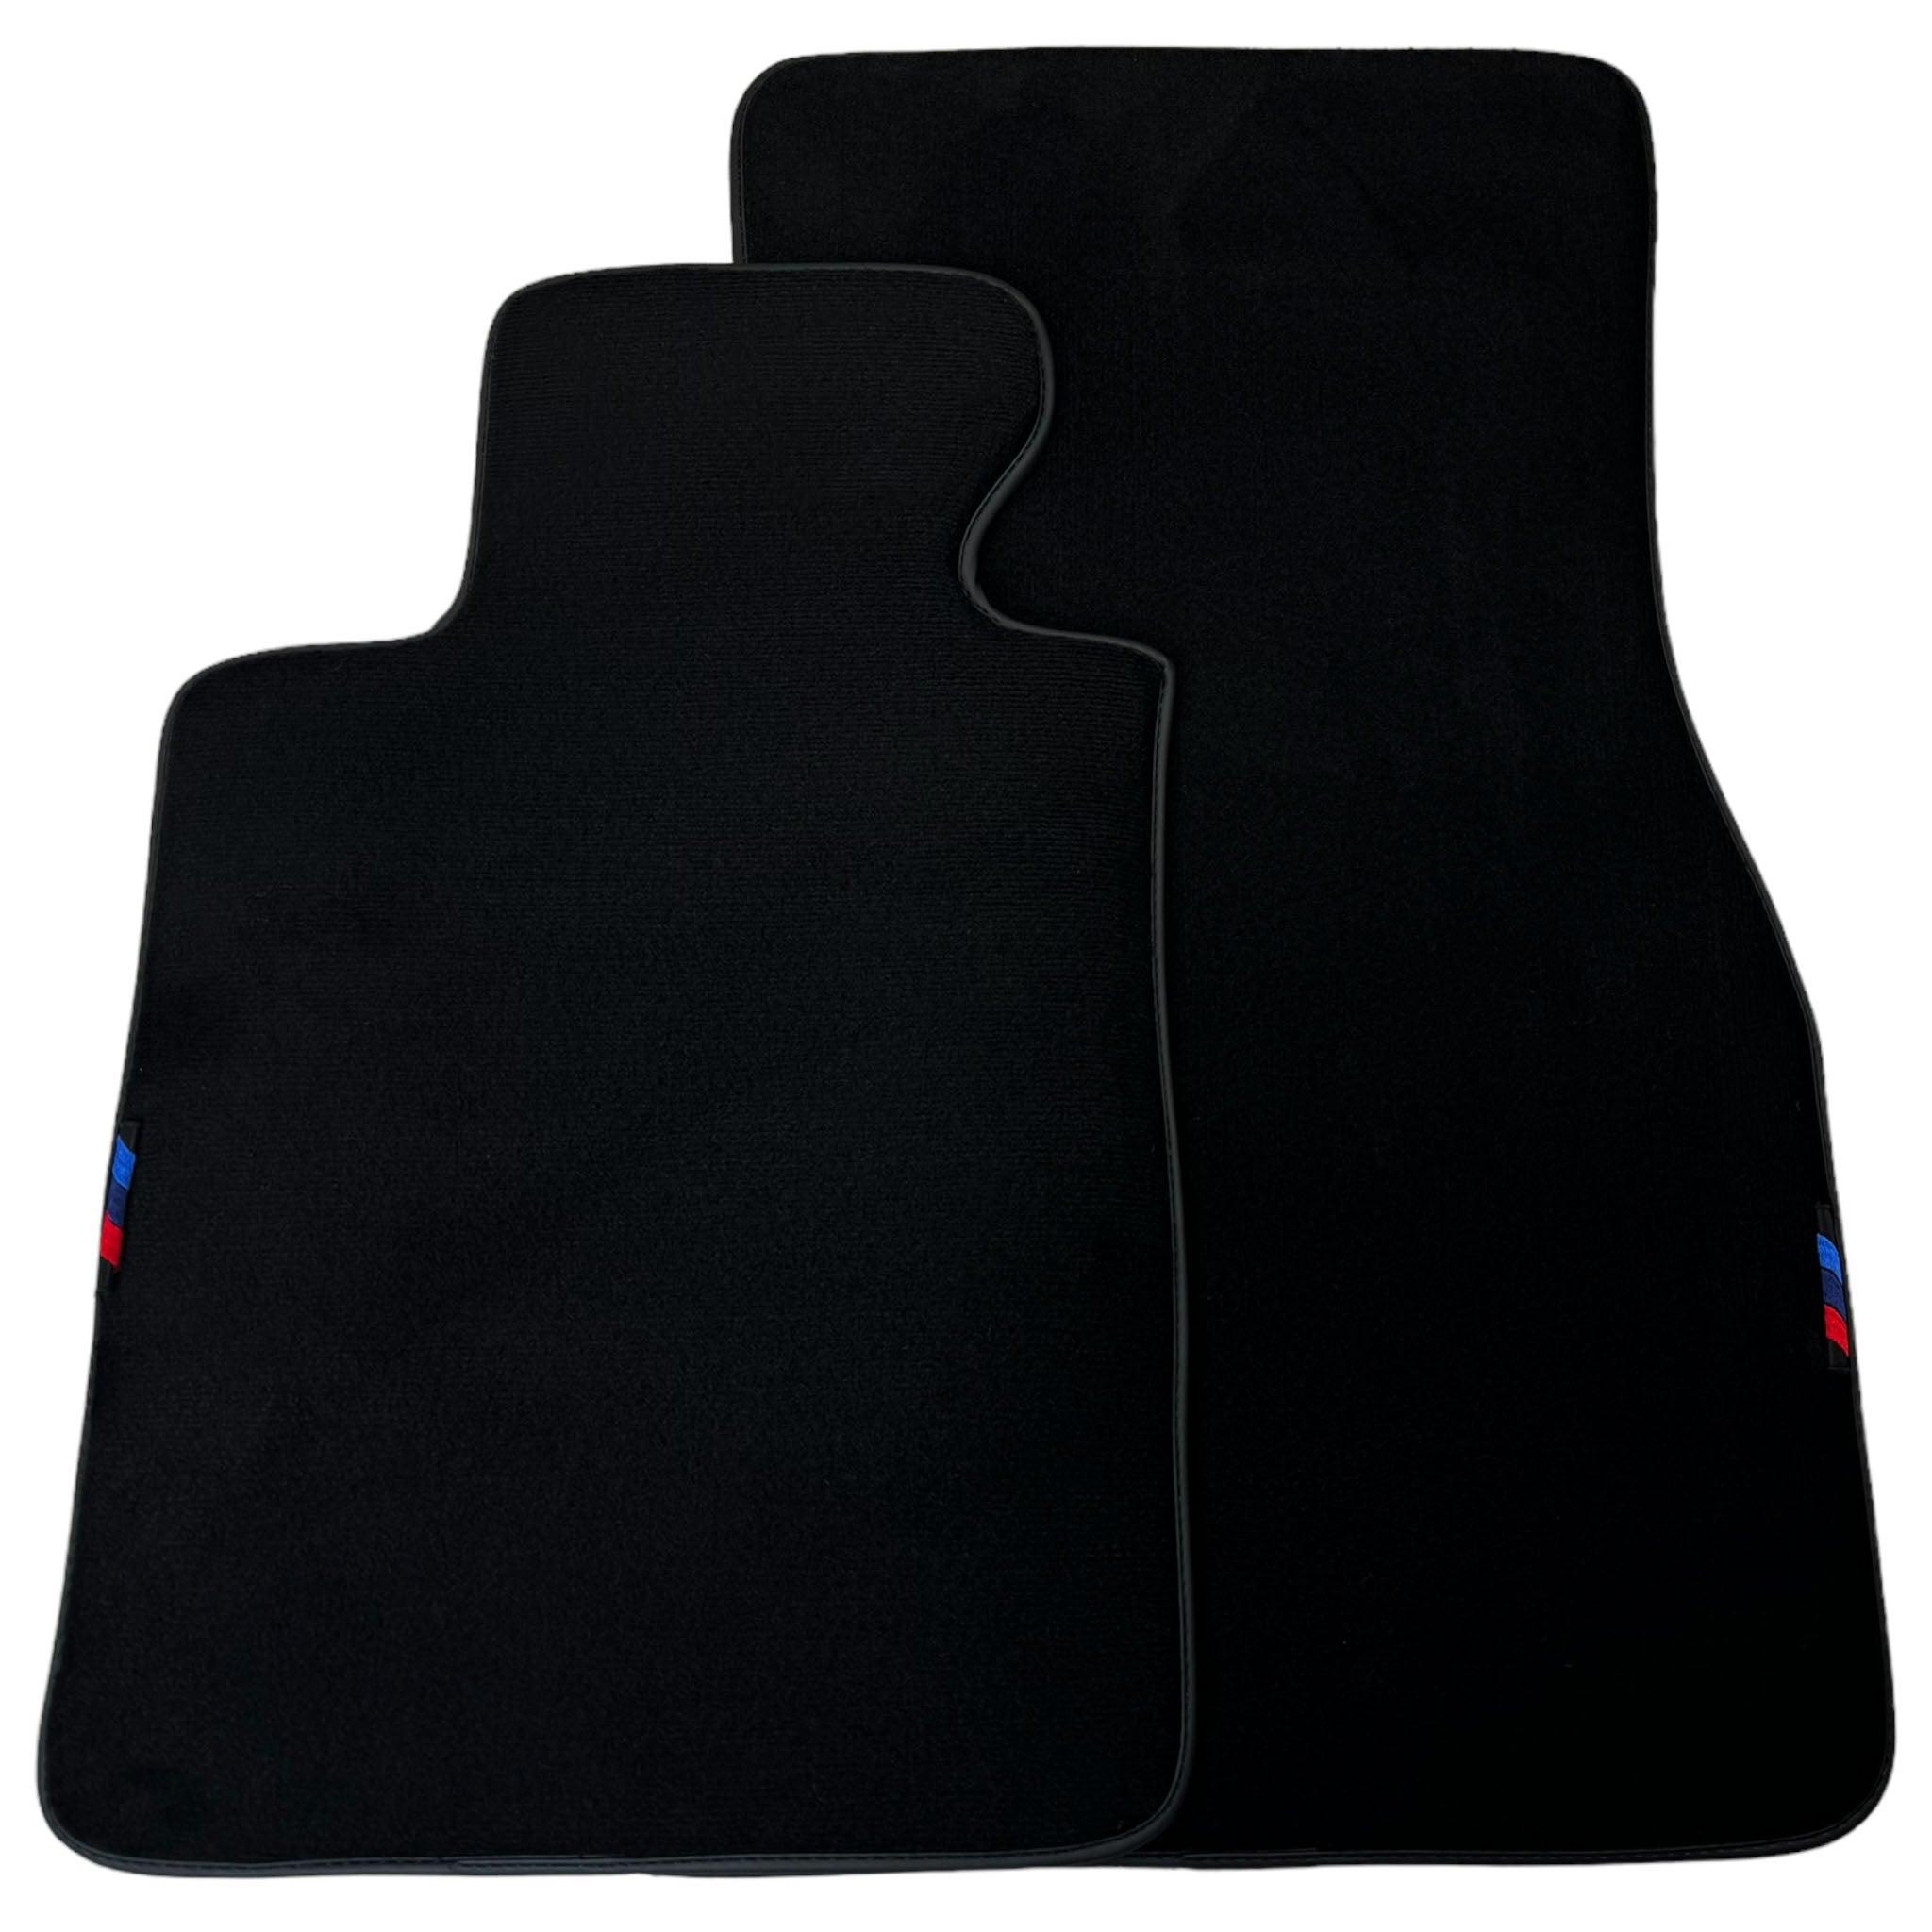 Black Floor Mats For BMW 6 Series F13 2-door Coupe | Black Trim